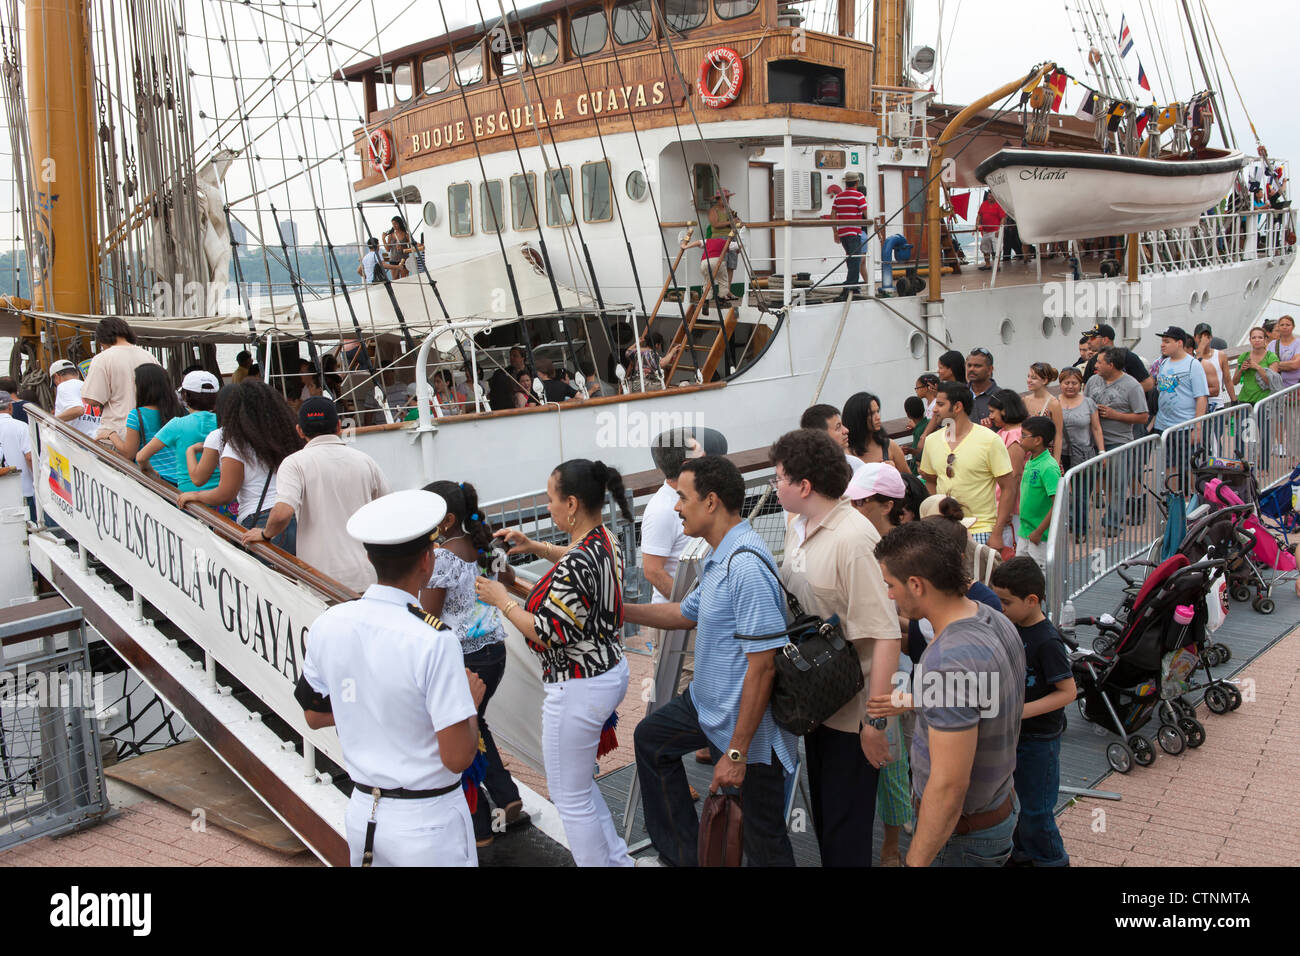 Les visiteurs font la queue pour monter à bord du navire-école équatorienne BAE au cours de la flotte 2012 Guayas semaine à New York City. Banque D'Images